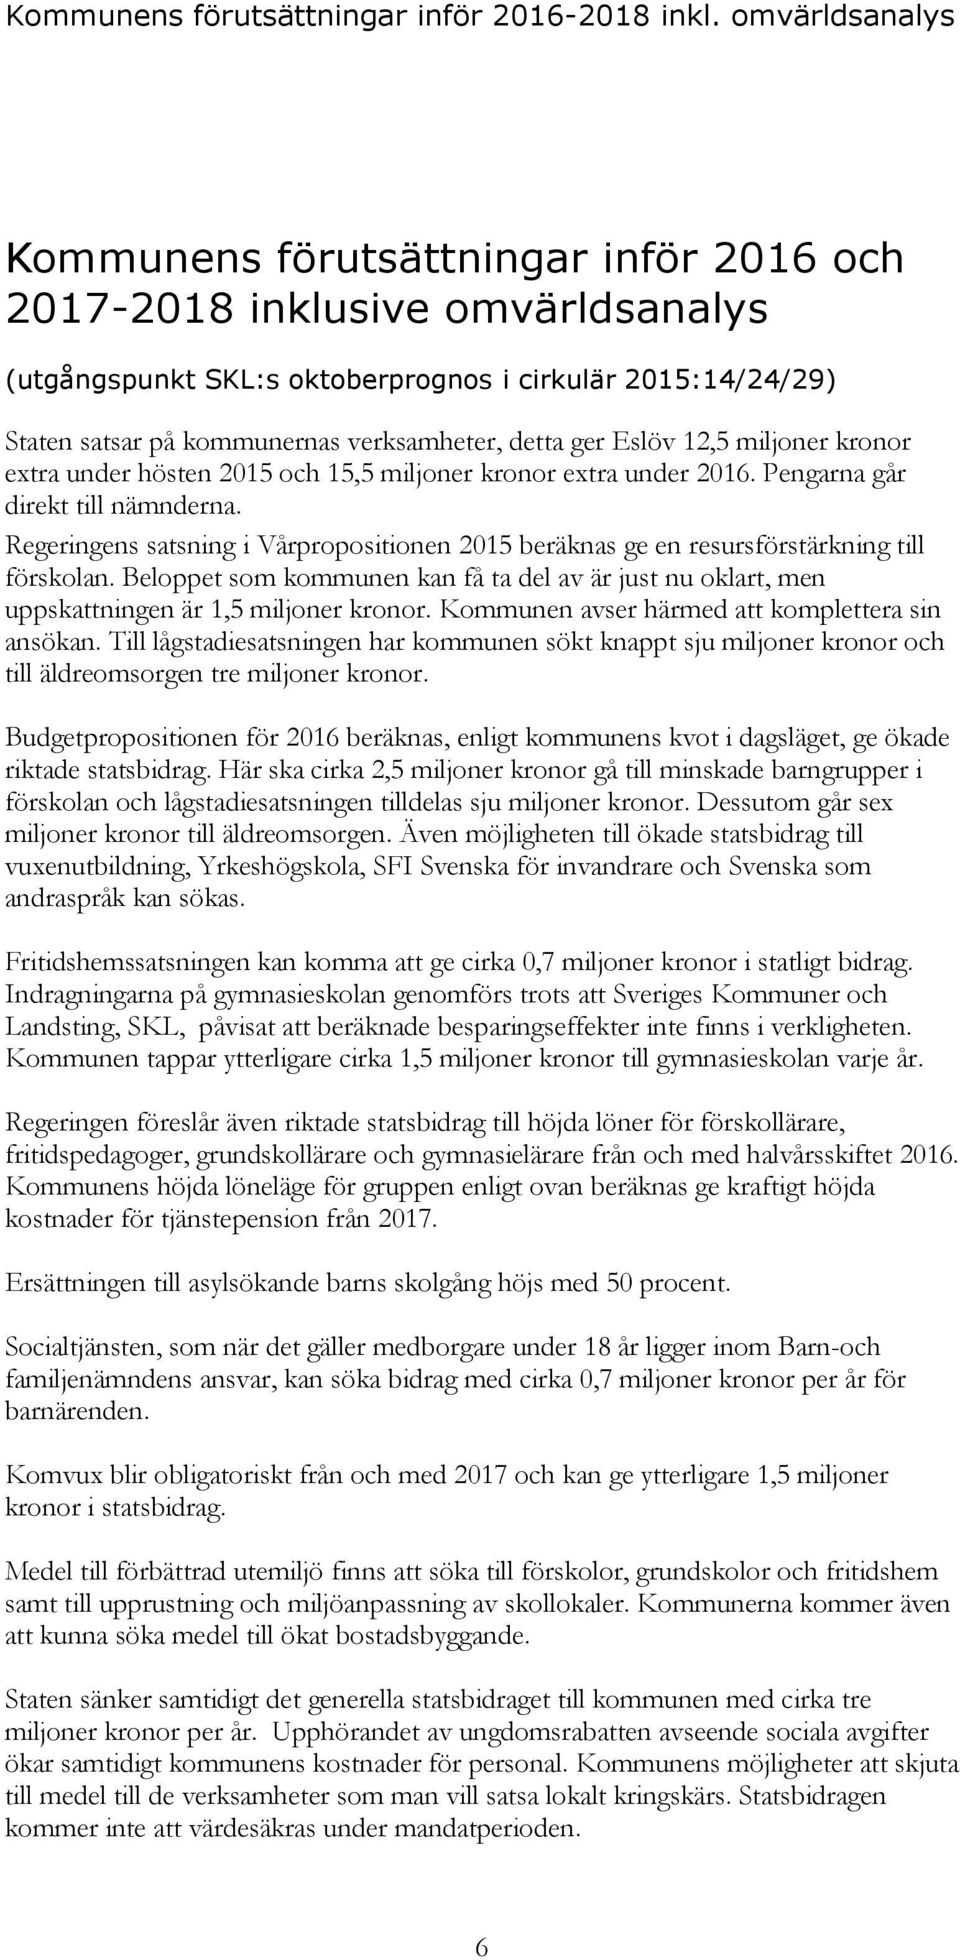 detta ger Eslöv 12,5 miljoner kronor extra under hösten 2015 och 15,5 miljoner kronor extra under 2016. Pengarna går direkt till nämnderna.